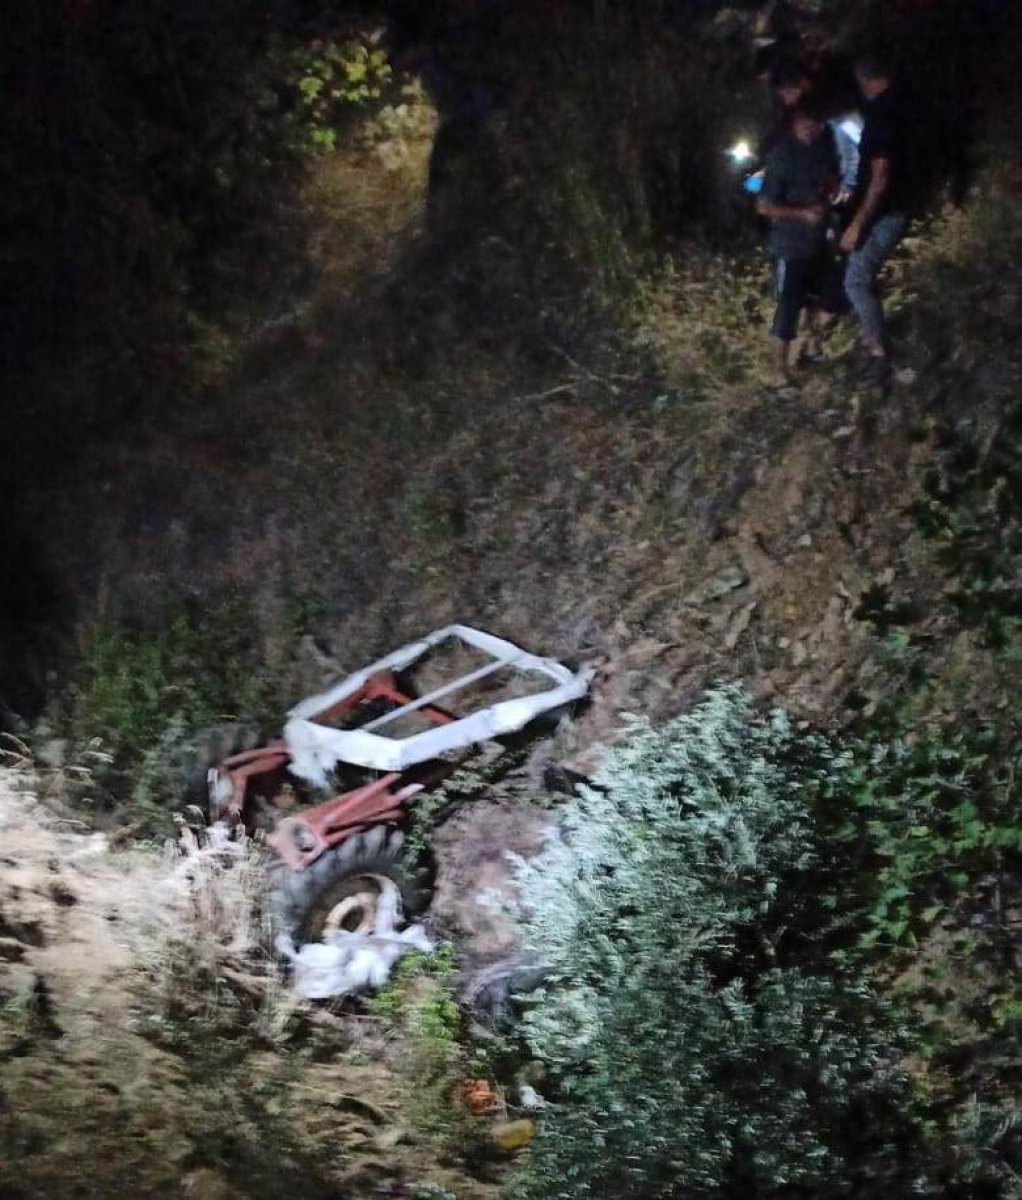 Manisa’da traktör uçuruma yuvarlandı: 1 ölü, 1 yaralı #1